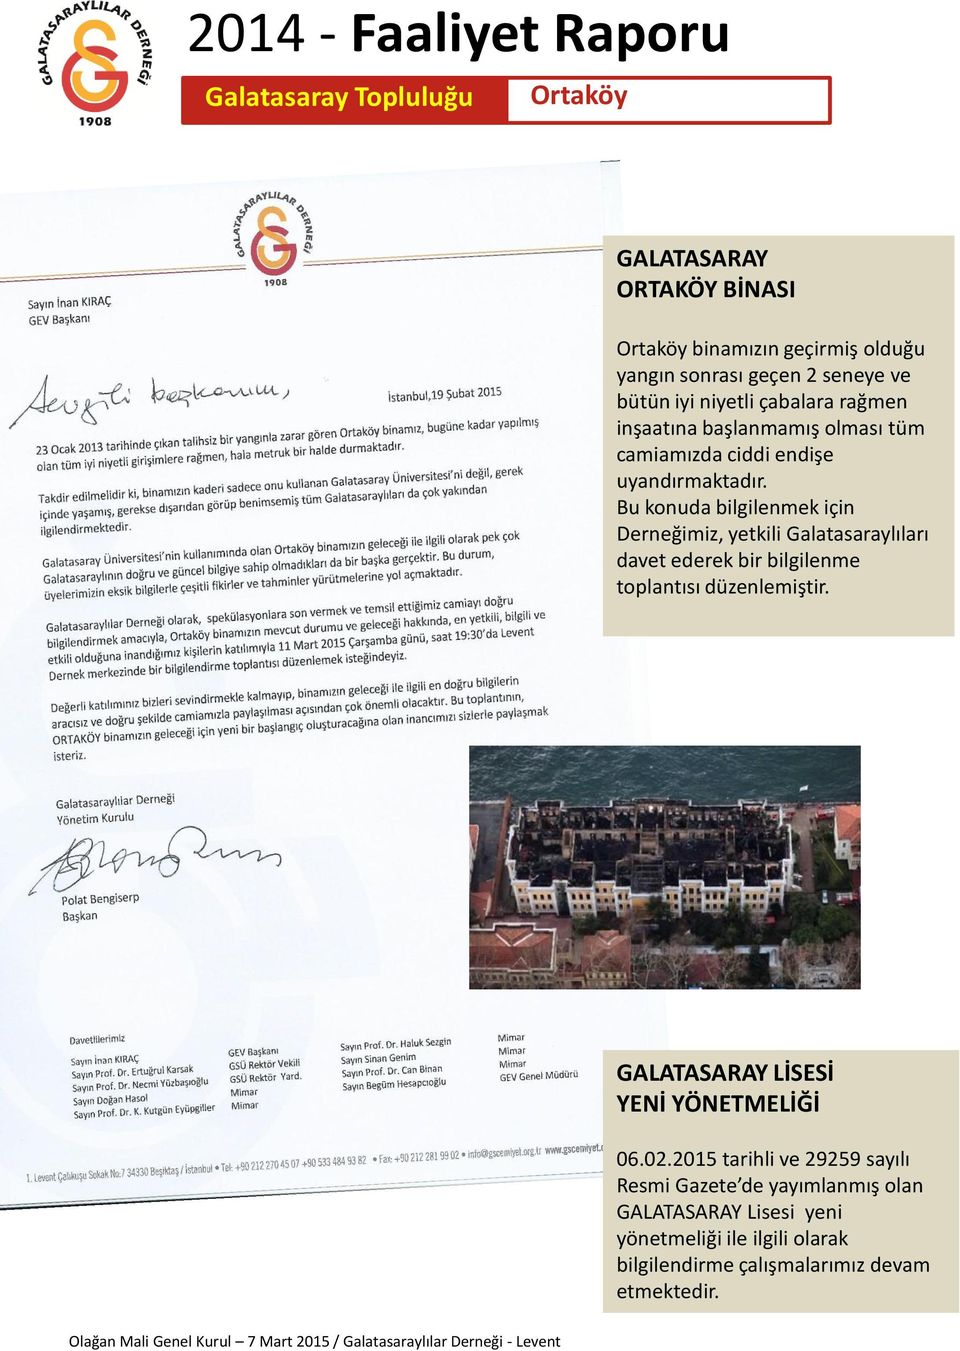 Bu konuda bilgilenmek için Derneğimiz, yetkili Galatasaraylıları davet ederek bir bilgilenme toplantısı düzenlemiştir.